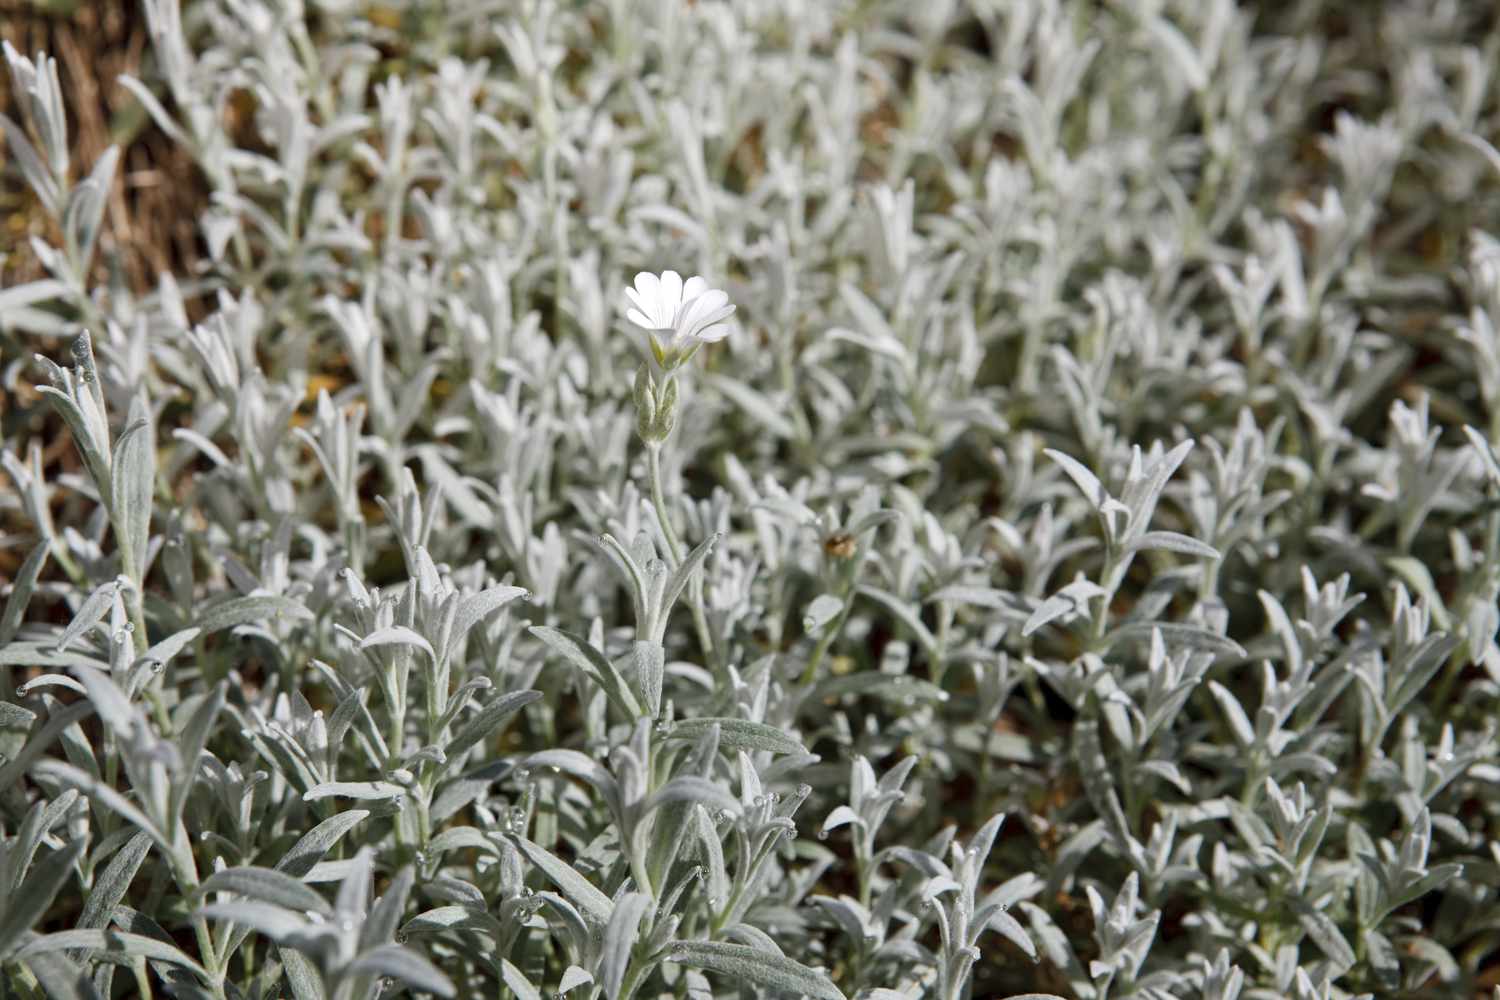 Nieve en verano (Cerastium tomentosum)